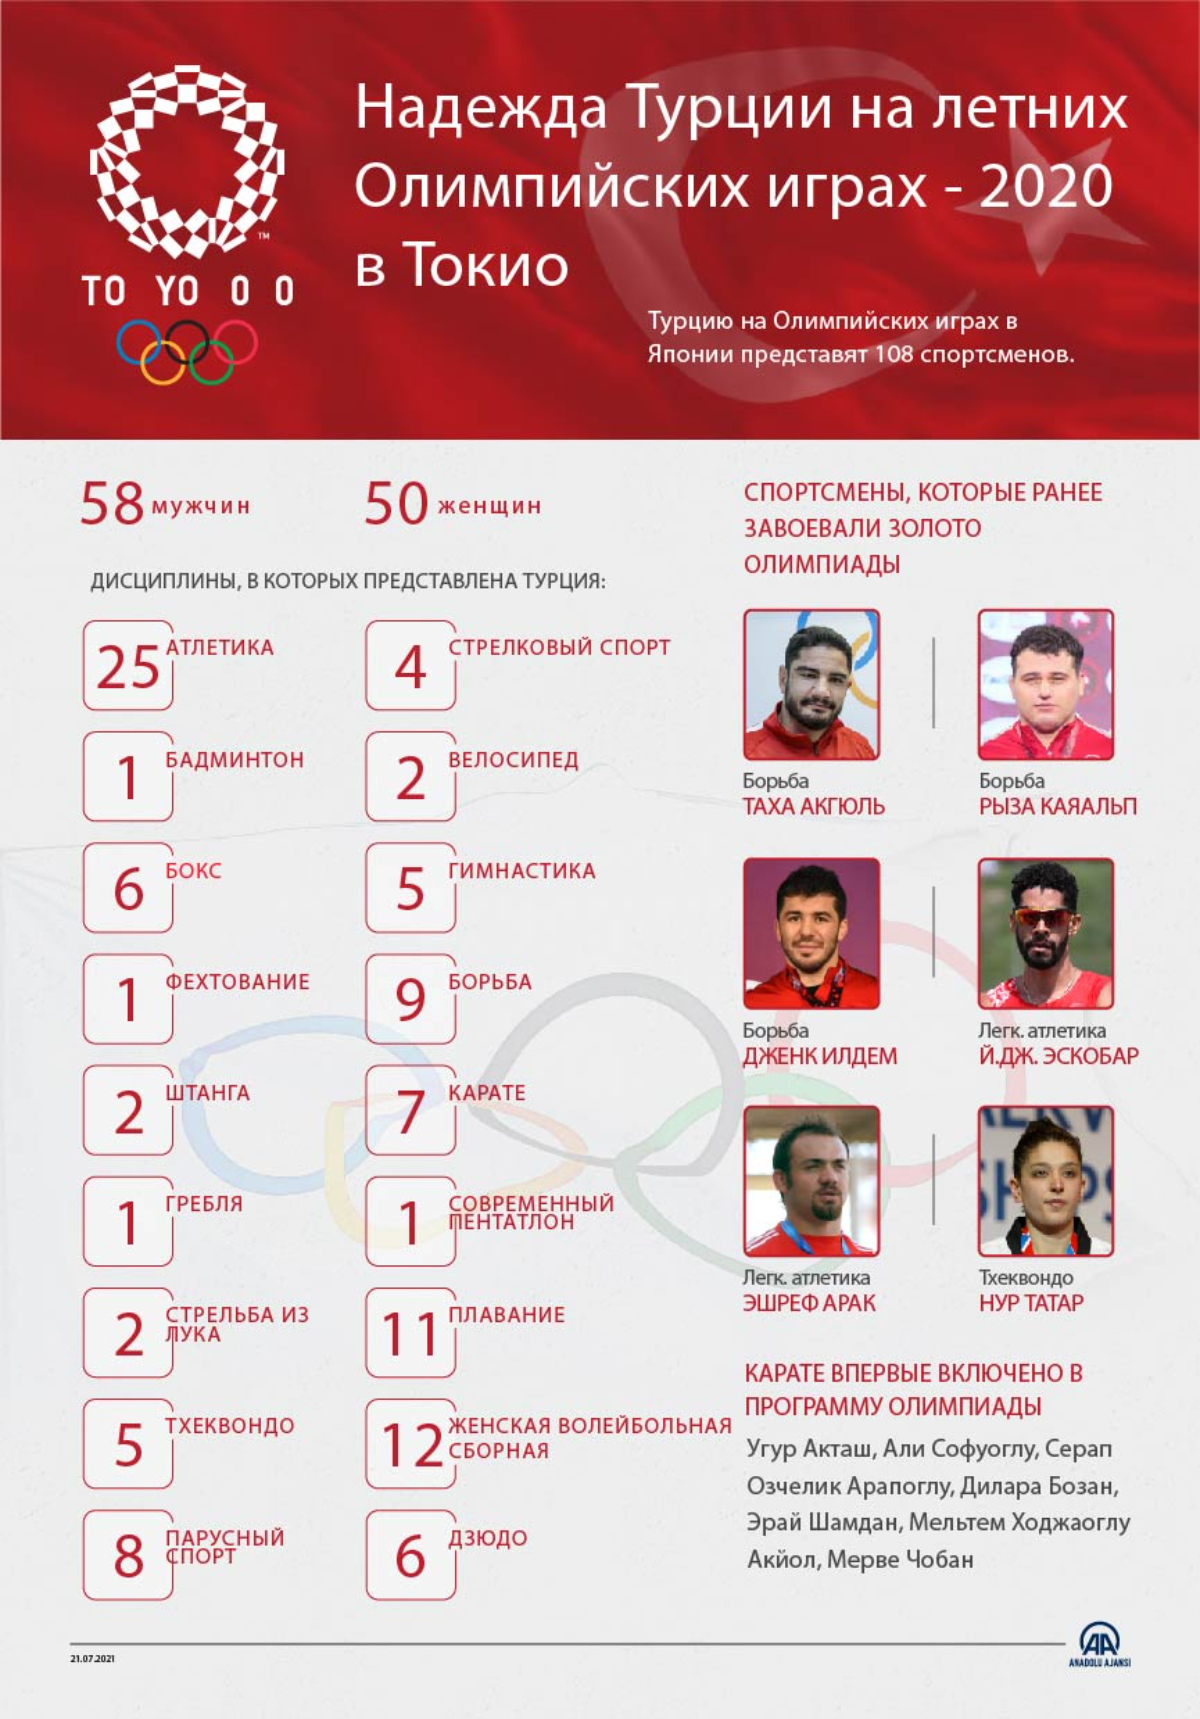 Надежда Турции на летних Олимпийских играх - 2020 в #Токио.  Турцию на Олимпийских играх в Японии представят 108 спортсменов.